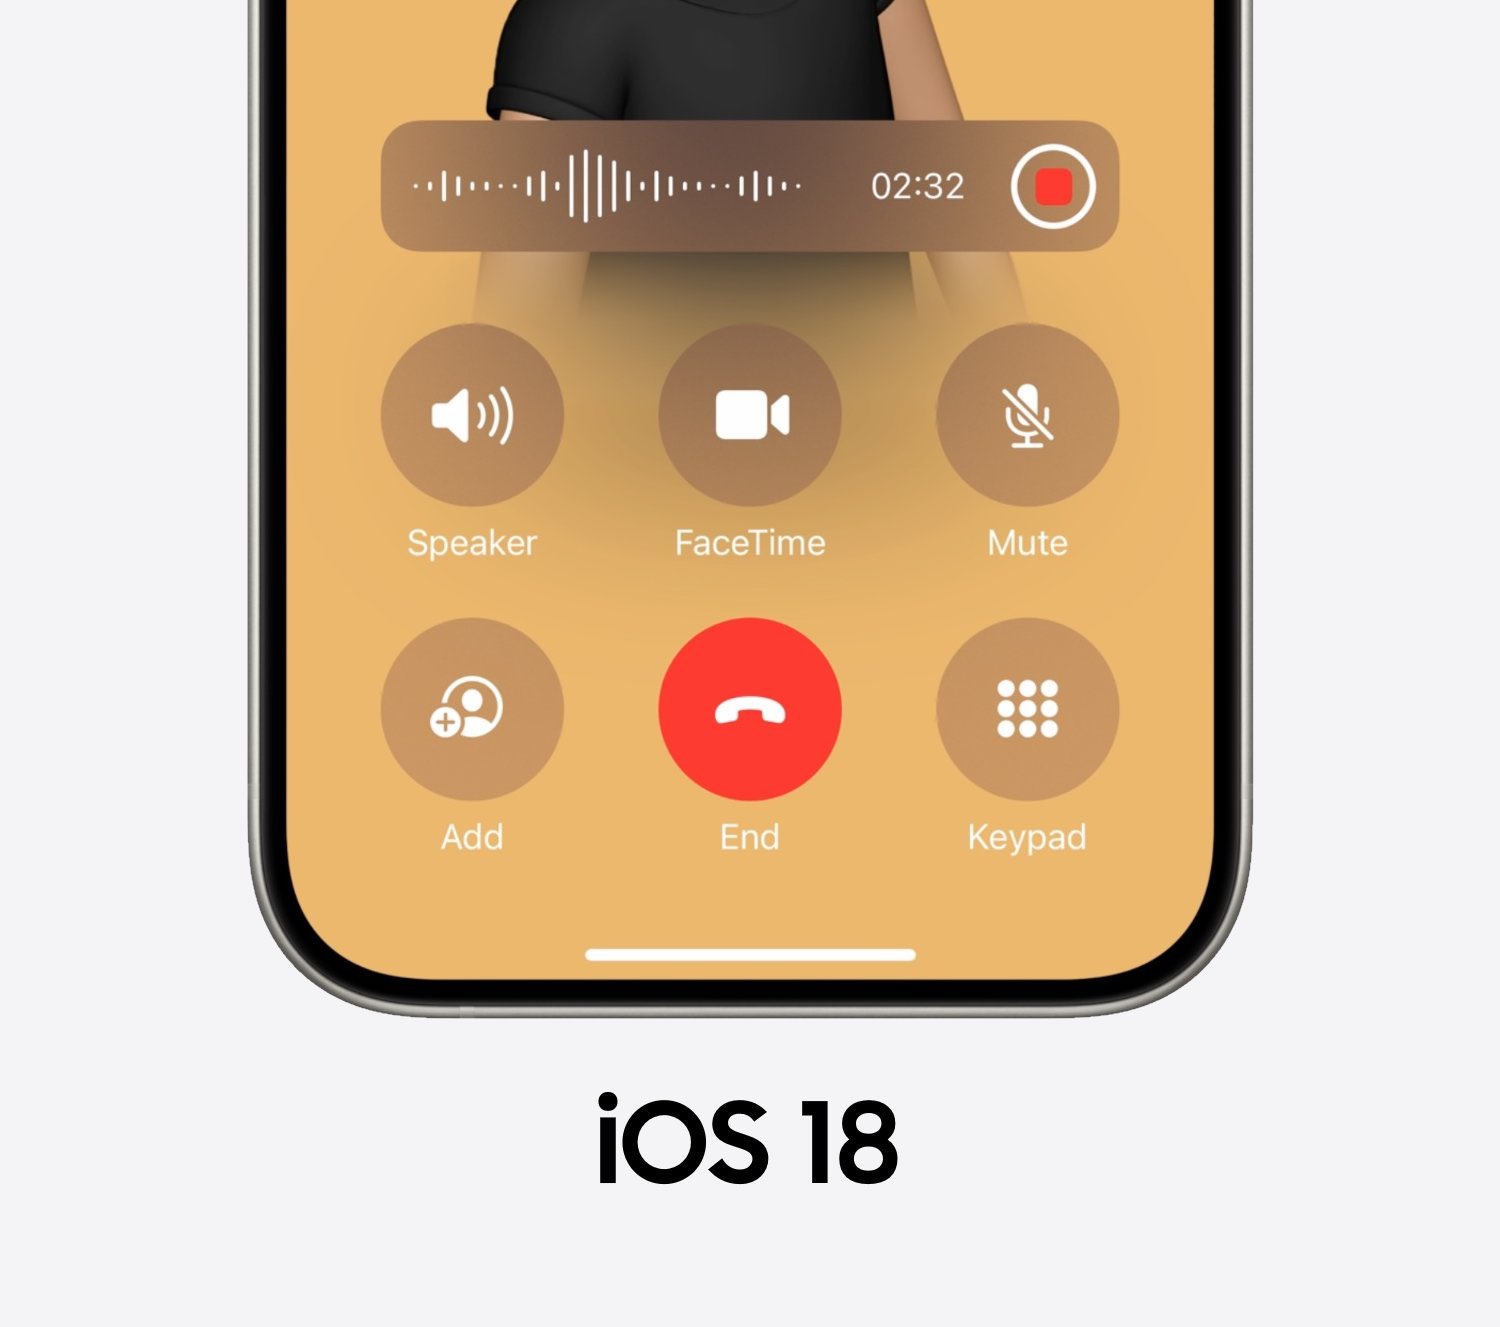 Depuis iPhoneIslam.com, gros plan d'un écran d'iPhone avec iOS 18, montrant une interface d'appel active avec enregistrement d'appel en cours. L'écran affiche une minuterie 02:32 et des options pour Haut-parleur, FaceTime, Muet, Ajouter, Fin et Clavier, le tout parfaitement intégré sans utiliser d'applications tierces.